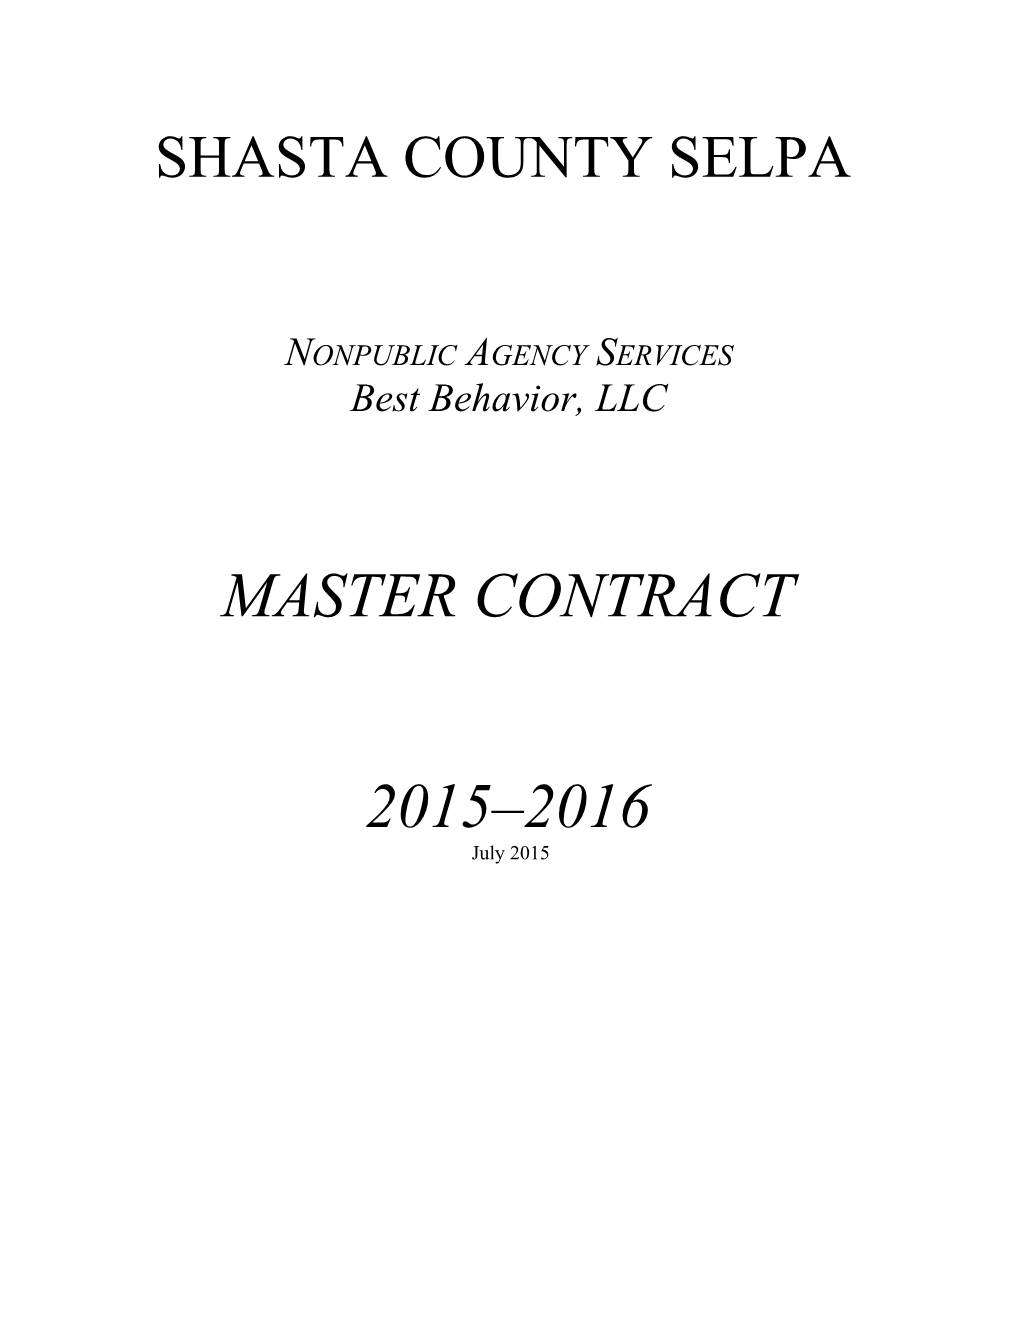 Shasta County NPA Master Contract